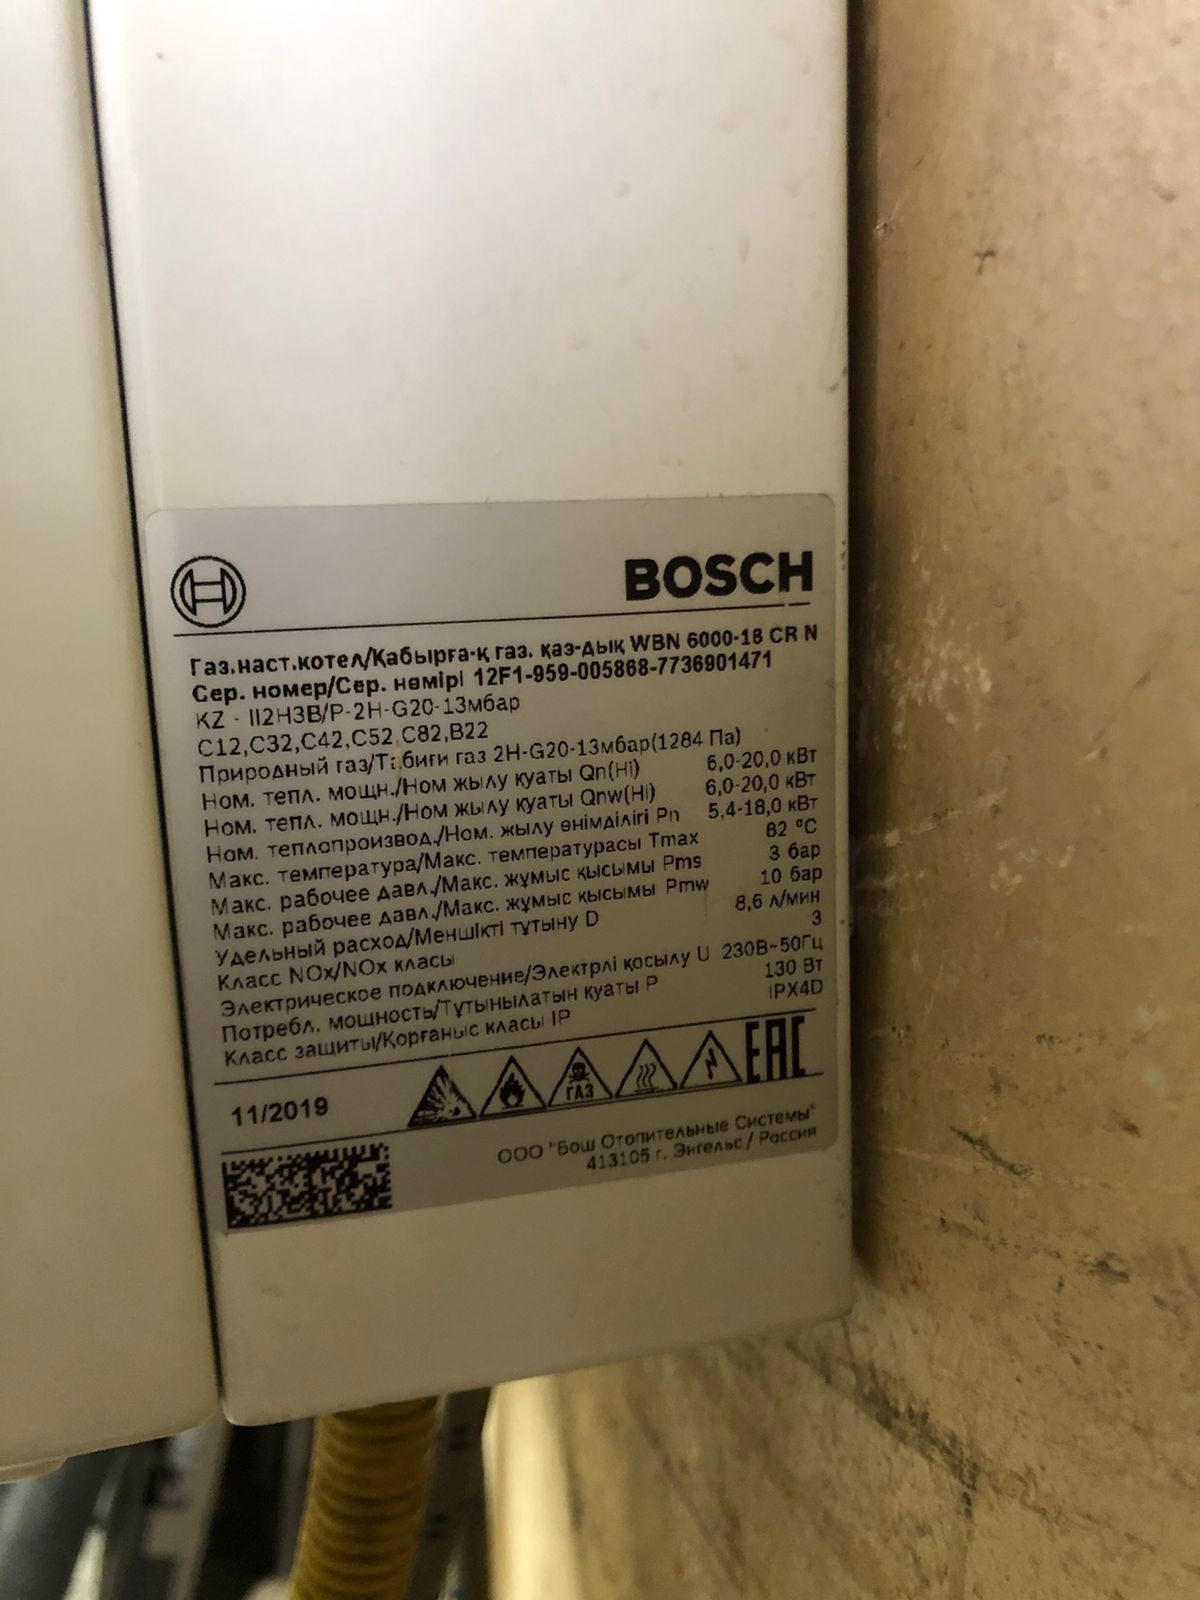 Продам газовый котел Bosch бу на 18 кв бу в хорошем состоянии